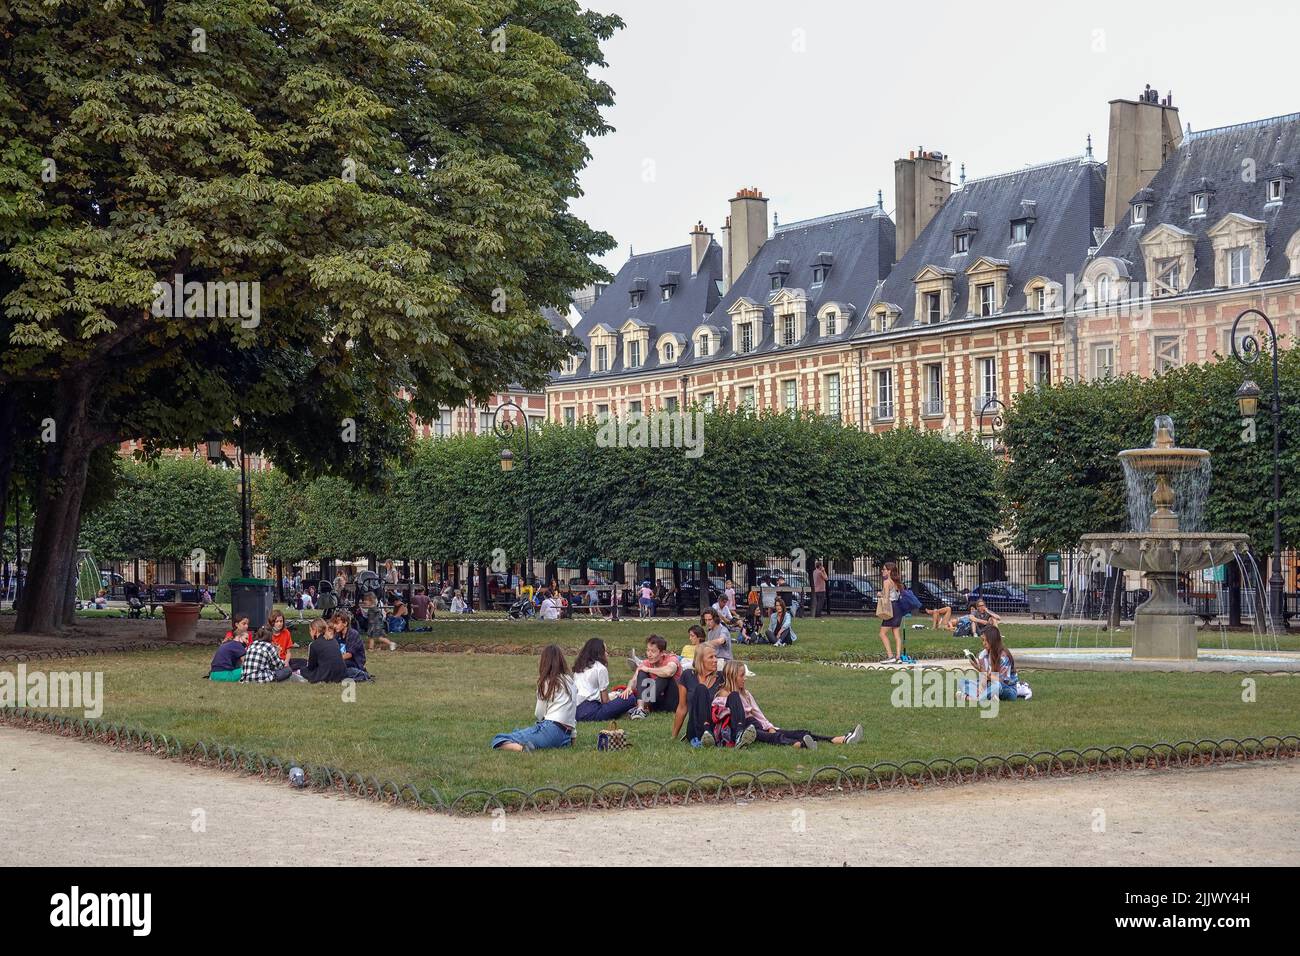 Francia, París, la Place des Vosges, originalmente Place Royale, es la plaza más antigua planeada en París, Francia. Se encuentra en el distrito de Marais, y. Foto de stock